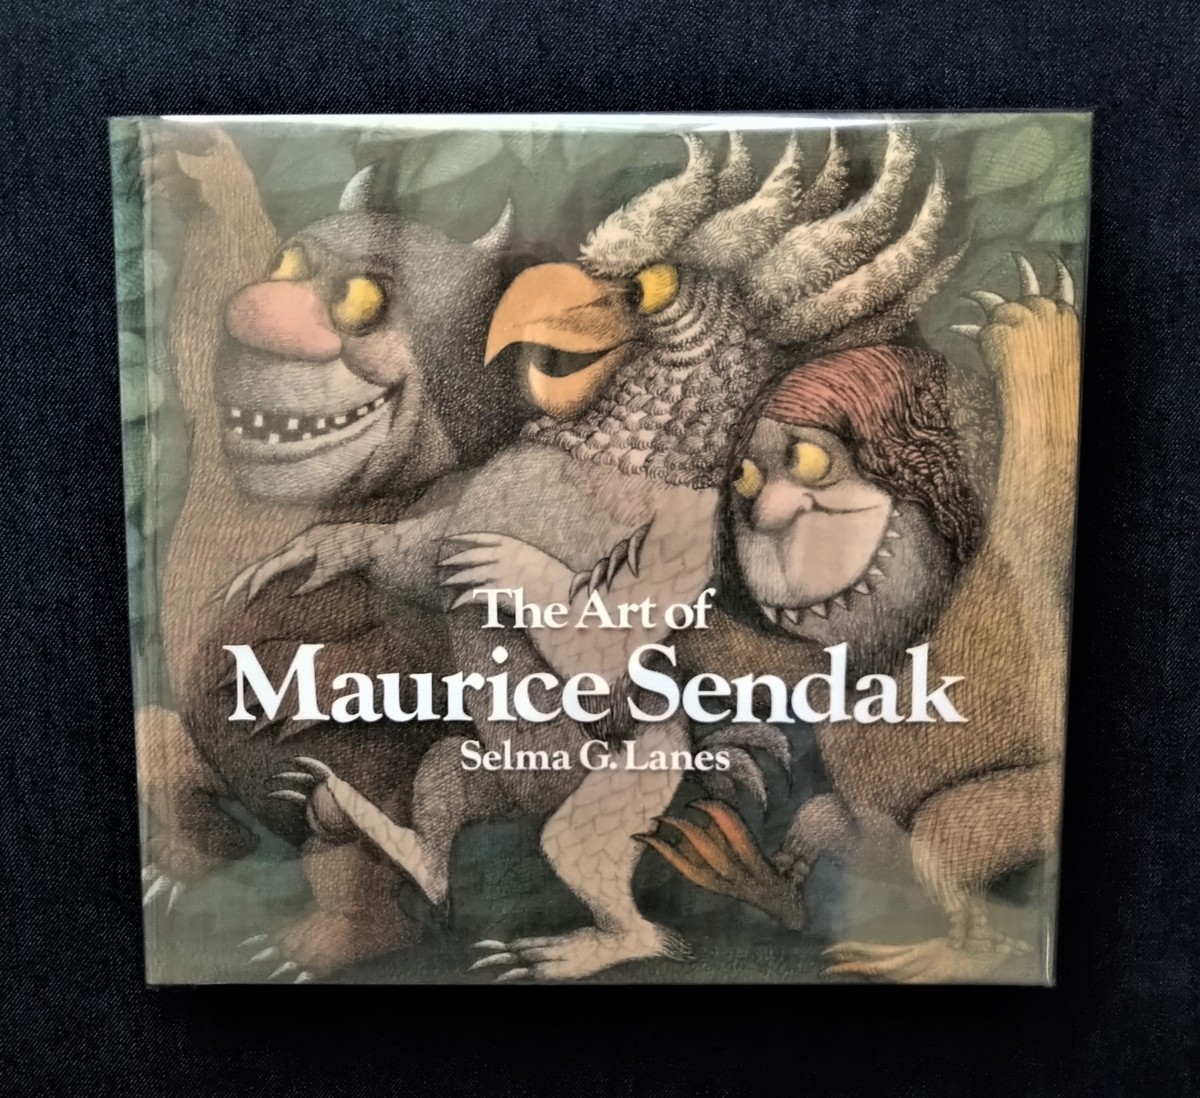  роскошный Morris *sen Duck произведение * история иностранная книга The Art of Maurice Sendak........ .. место книга с картинками 